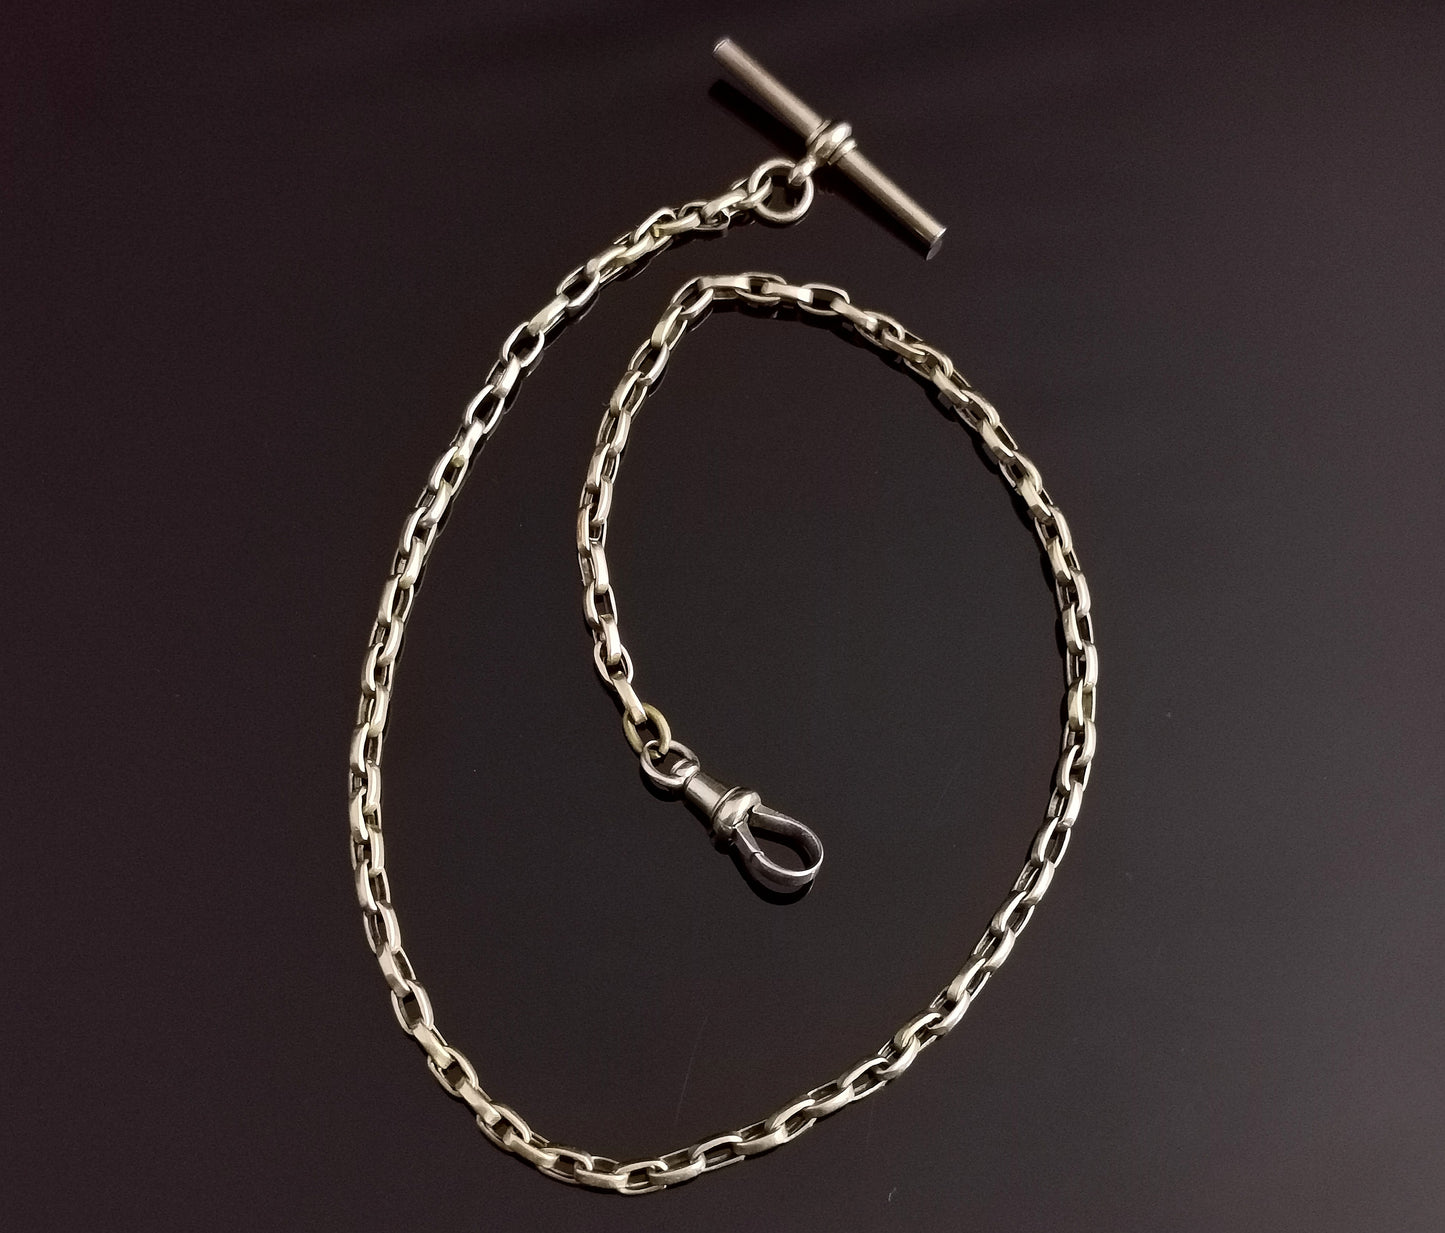 Antique 9ct gold Belcher link Albert chain, watch chain